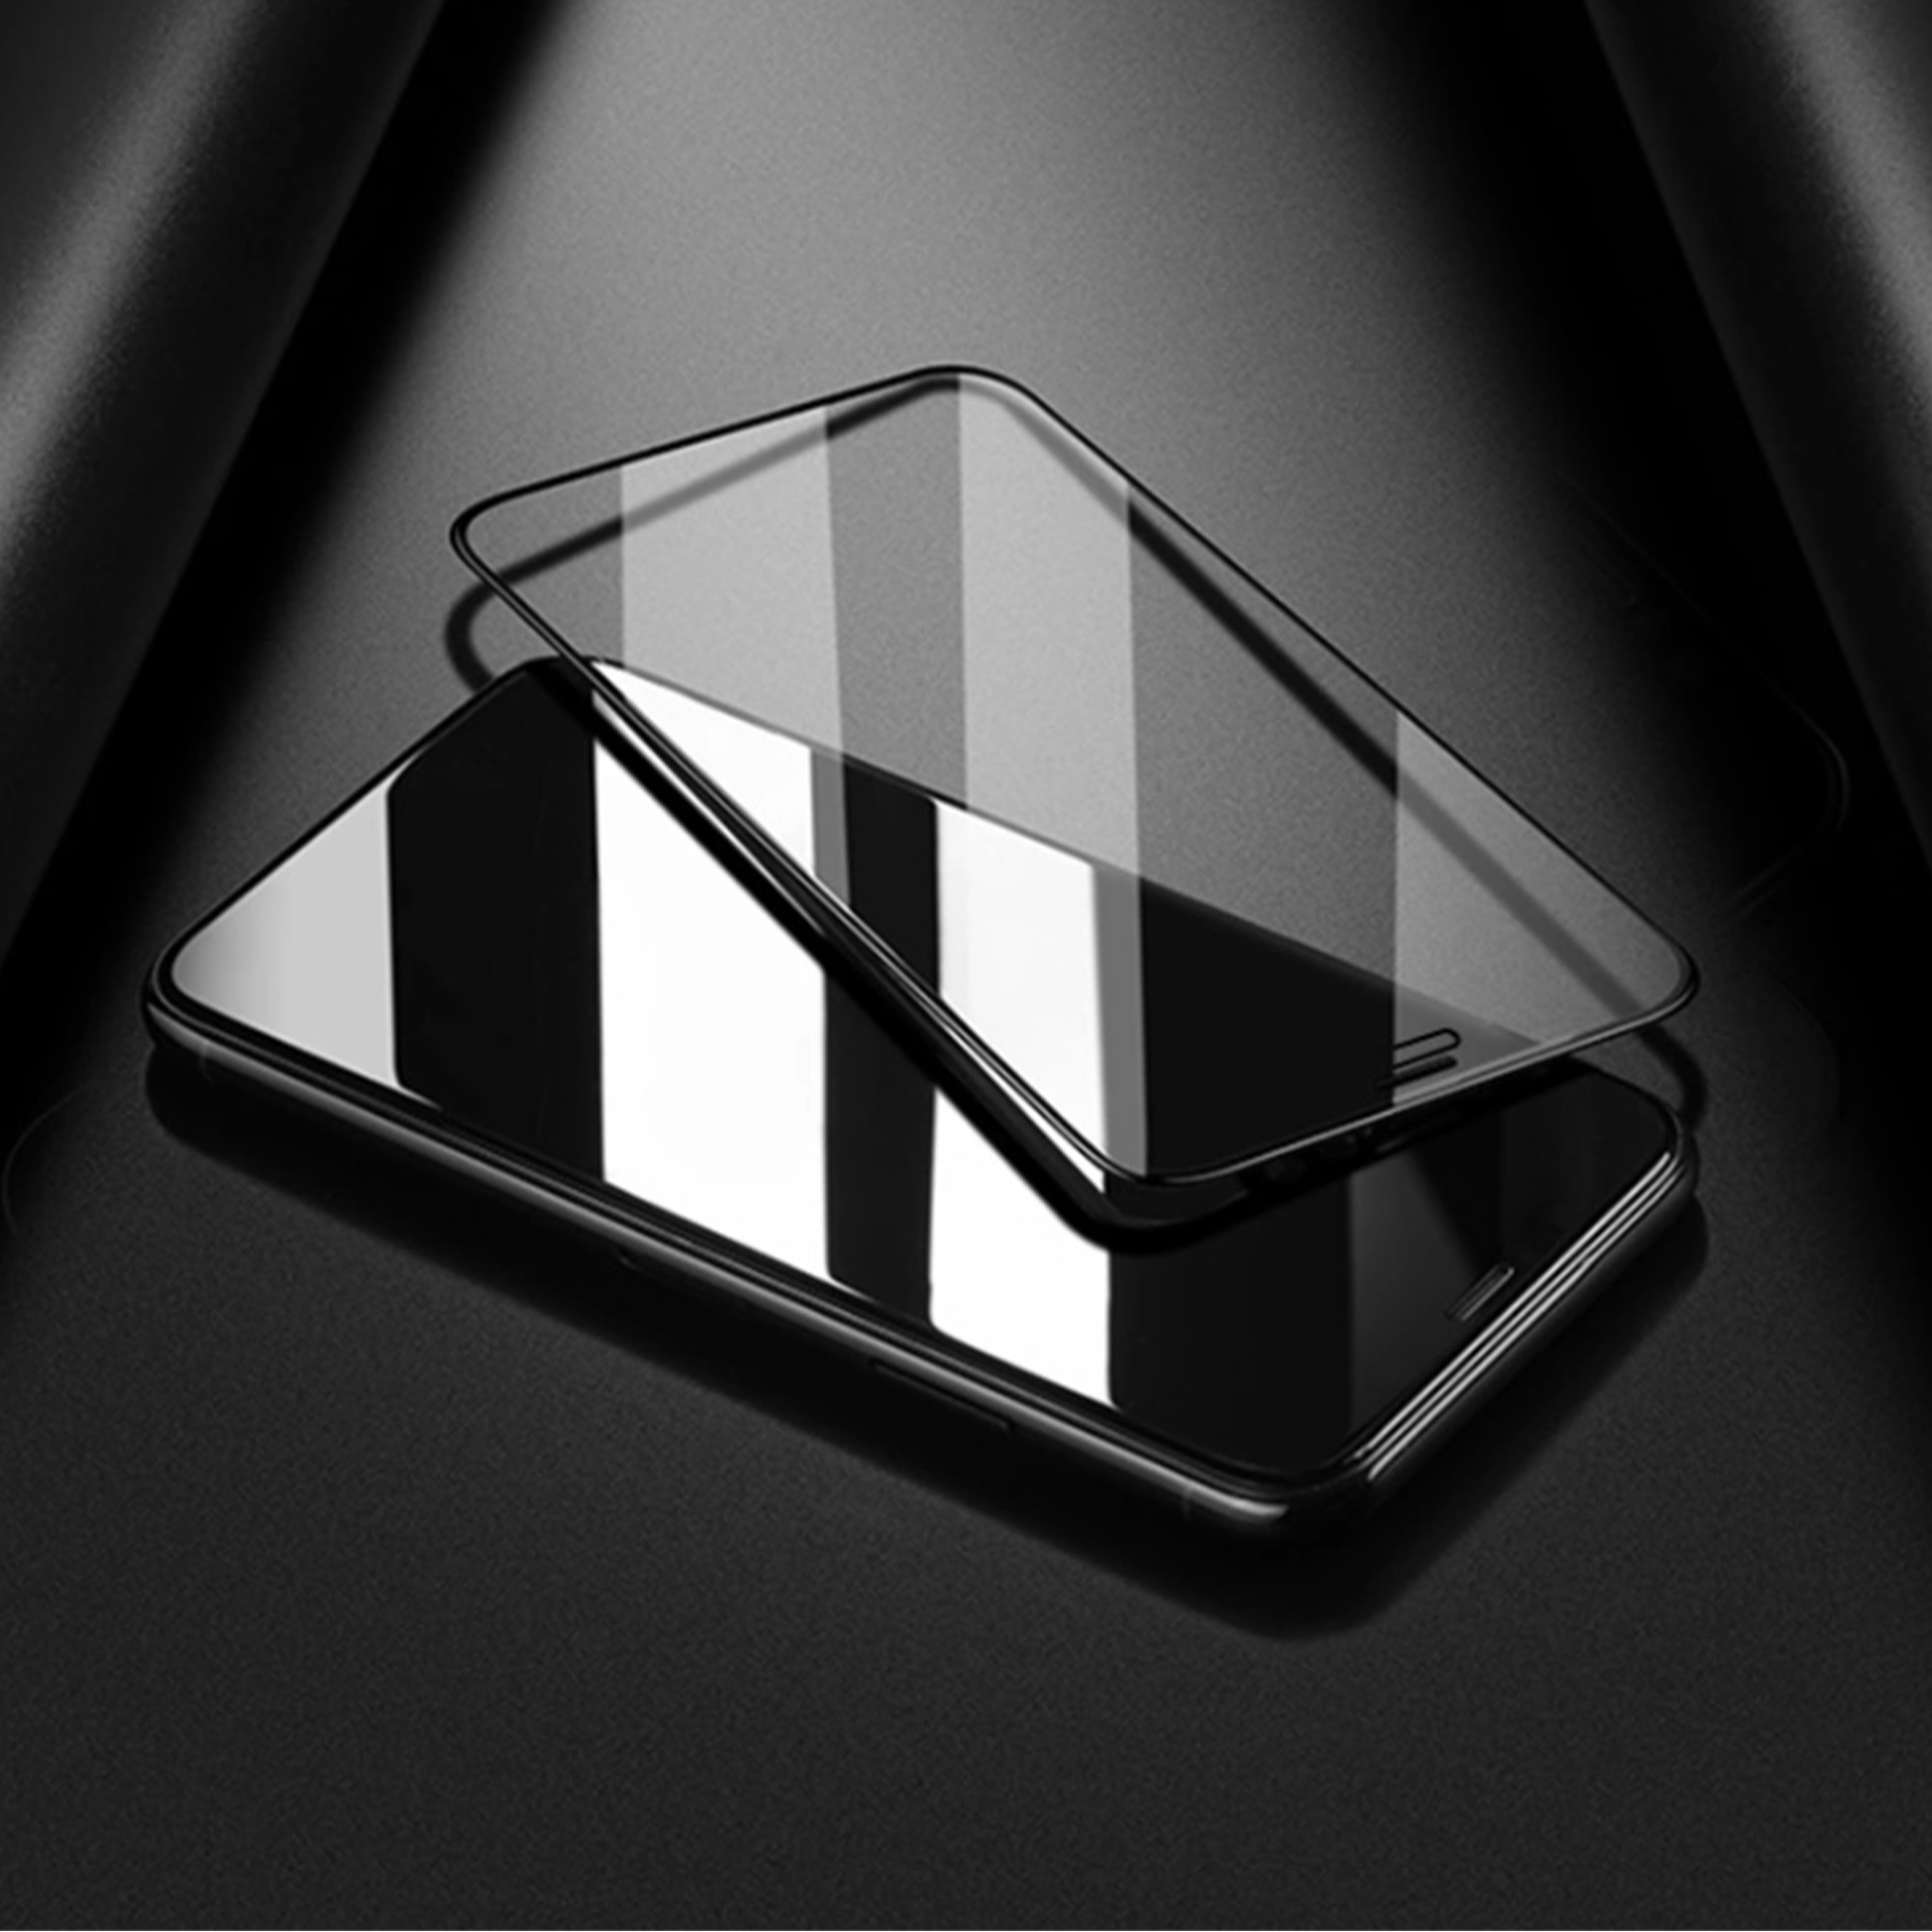 7+ Displayschutz(für HBASICS Panzerglas / Iphone Apple 3x 8+) Schutzglas,